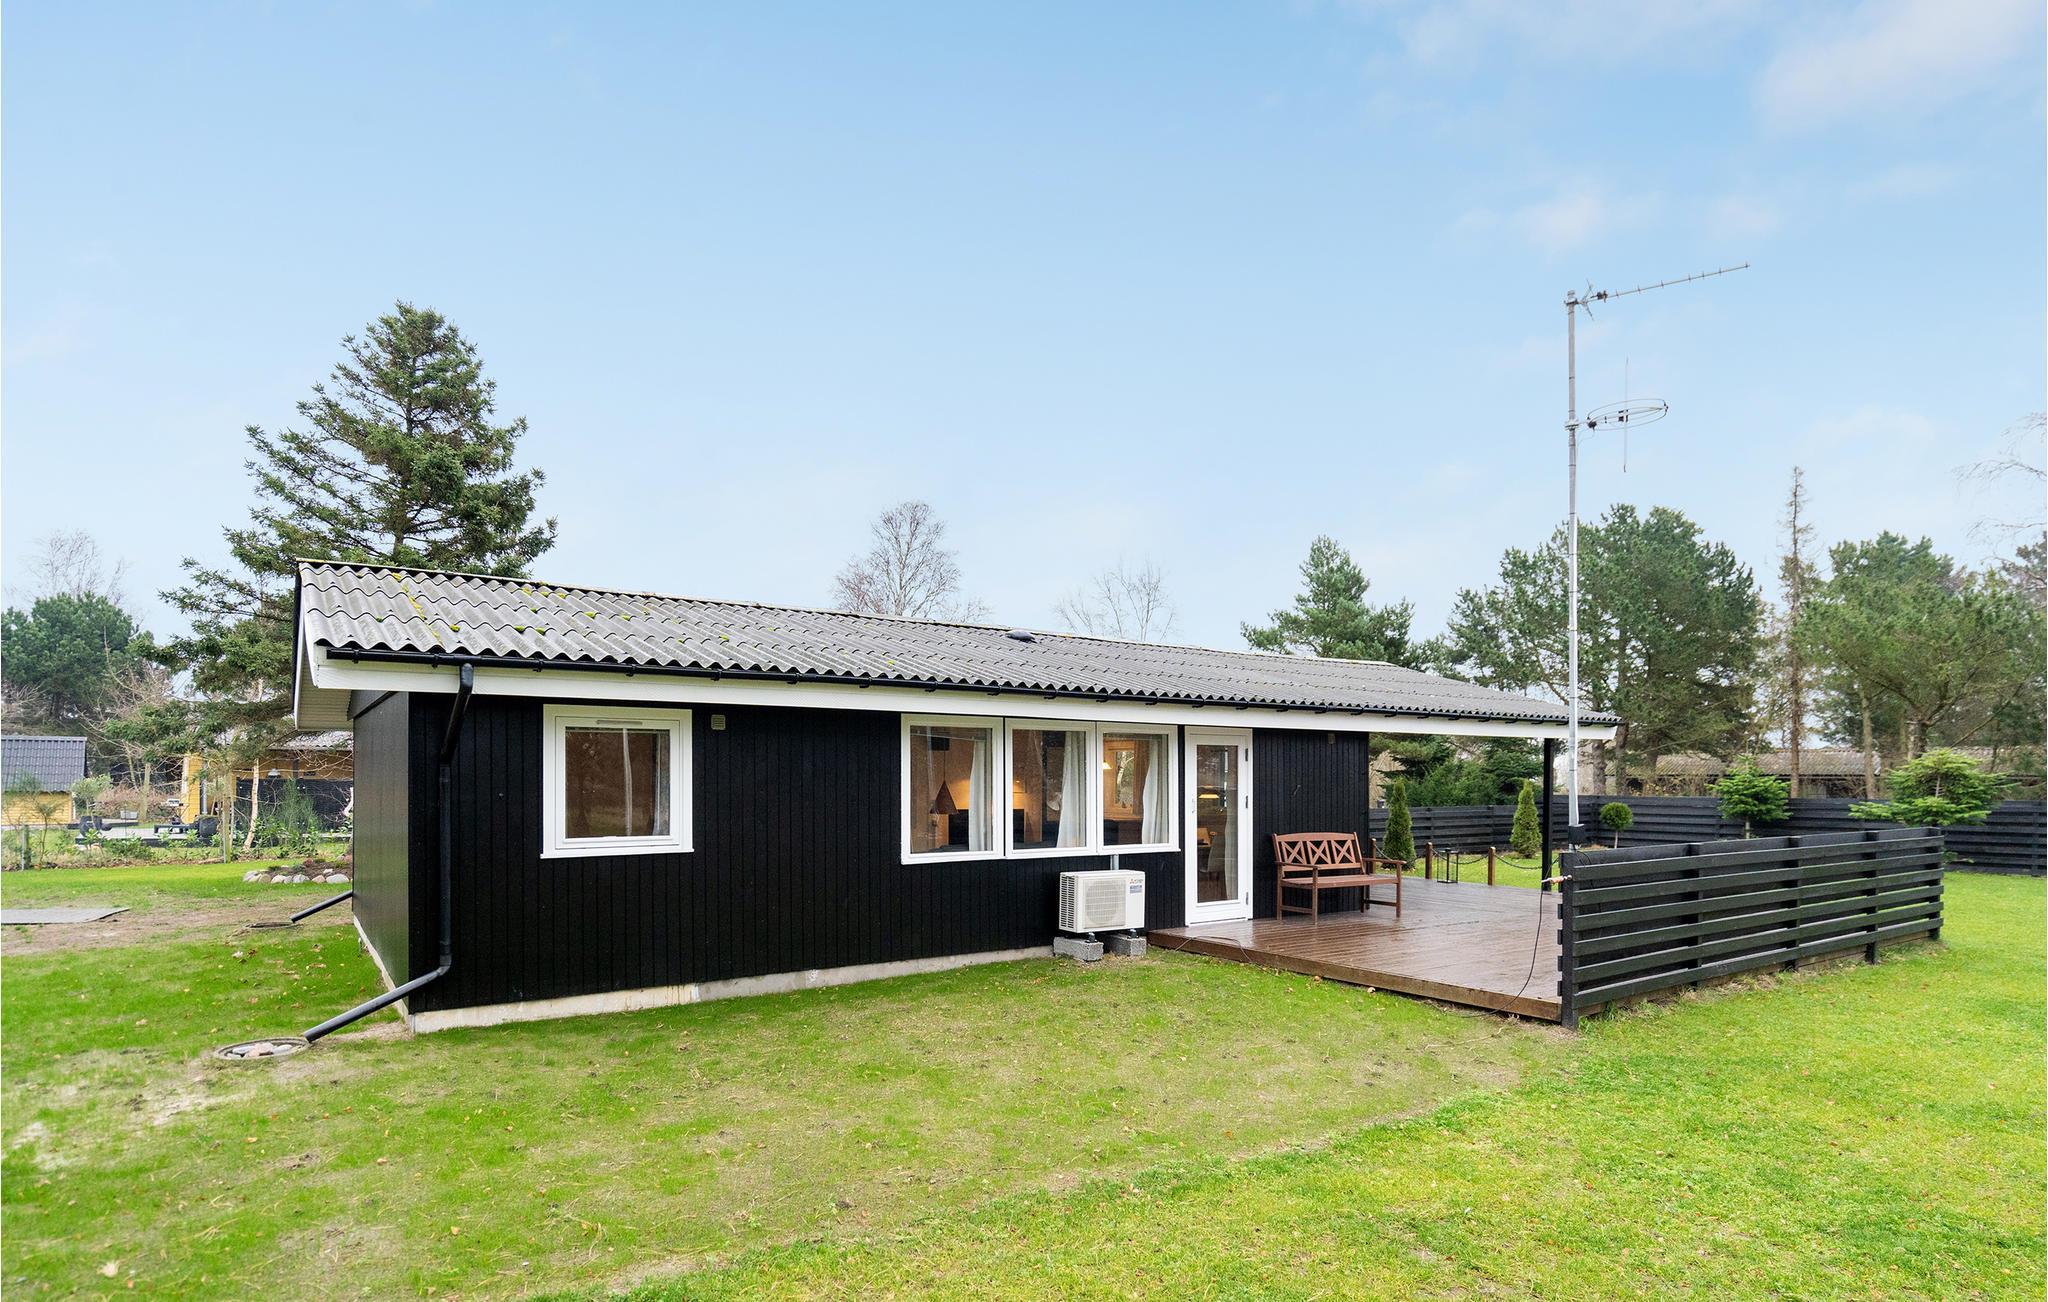 Familiesommerhuse hvor I kan tage med - Vælg mellem 343 sommerhuse - SommerhuseDanmark.dk